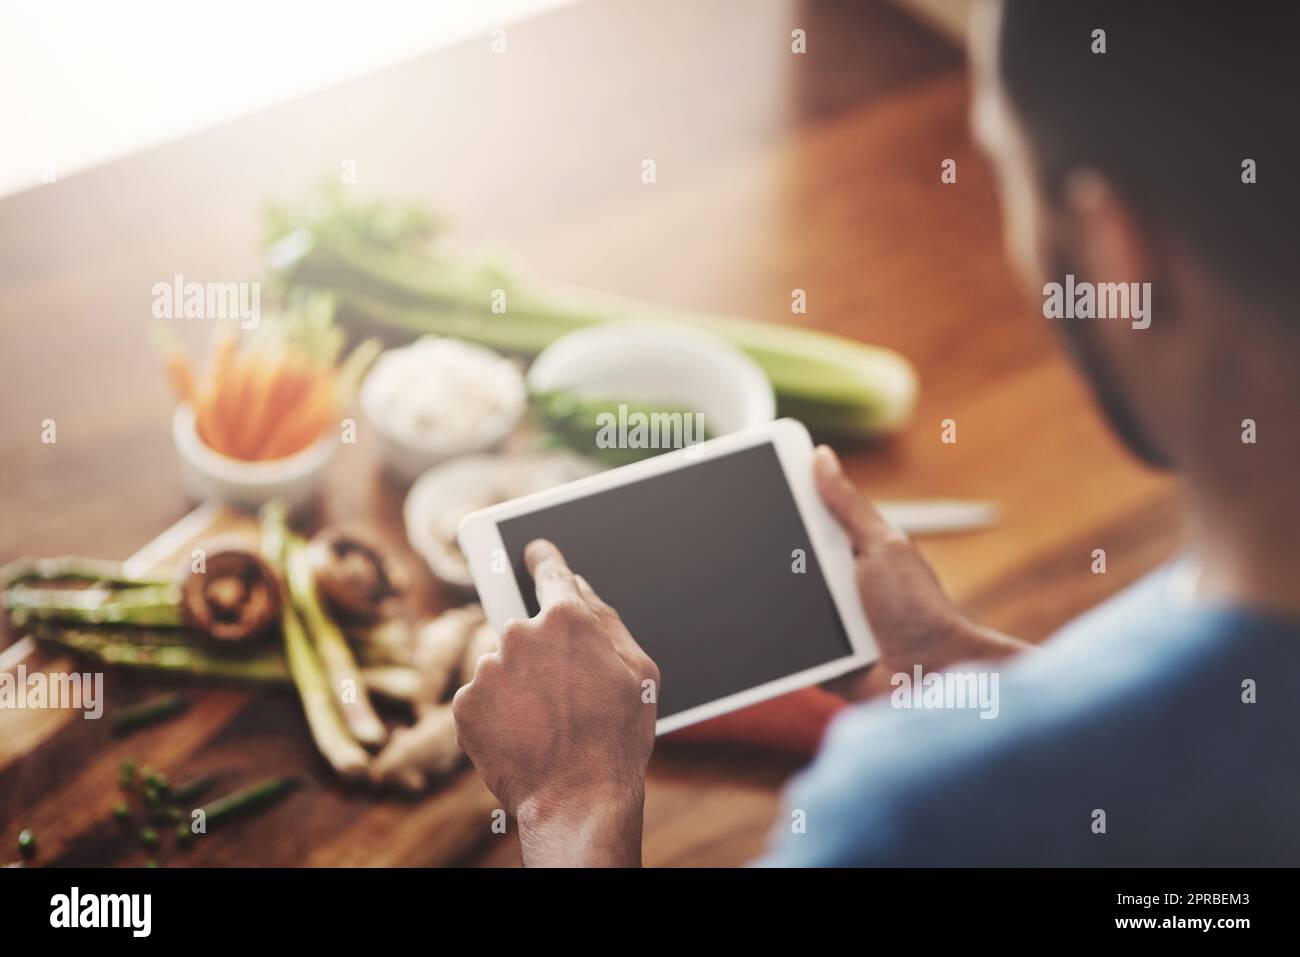 Primer plano de las manos del hombre sosteniendo una tableta para buscar una receta, investigar o buscar ingredientes mientras cocina la cena, el almuerzo o el desayuno. Desplazamiento en línea, la navegación de la aplicación y la búsqueda de ideas de comida Foto de stock